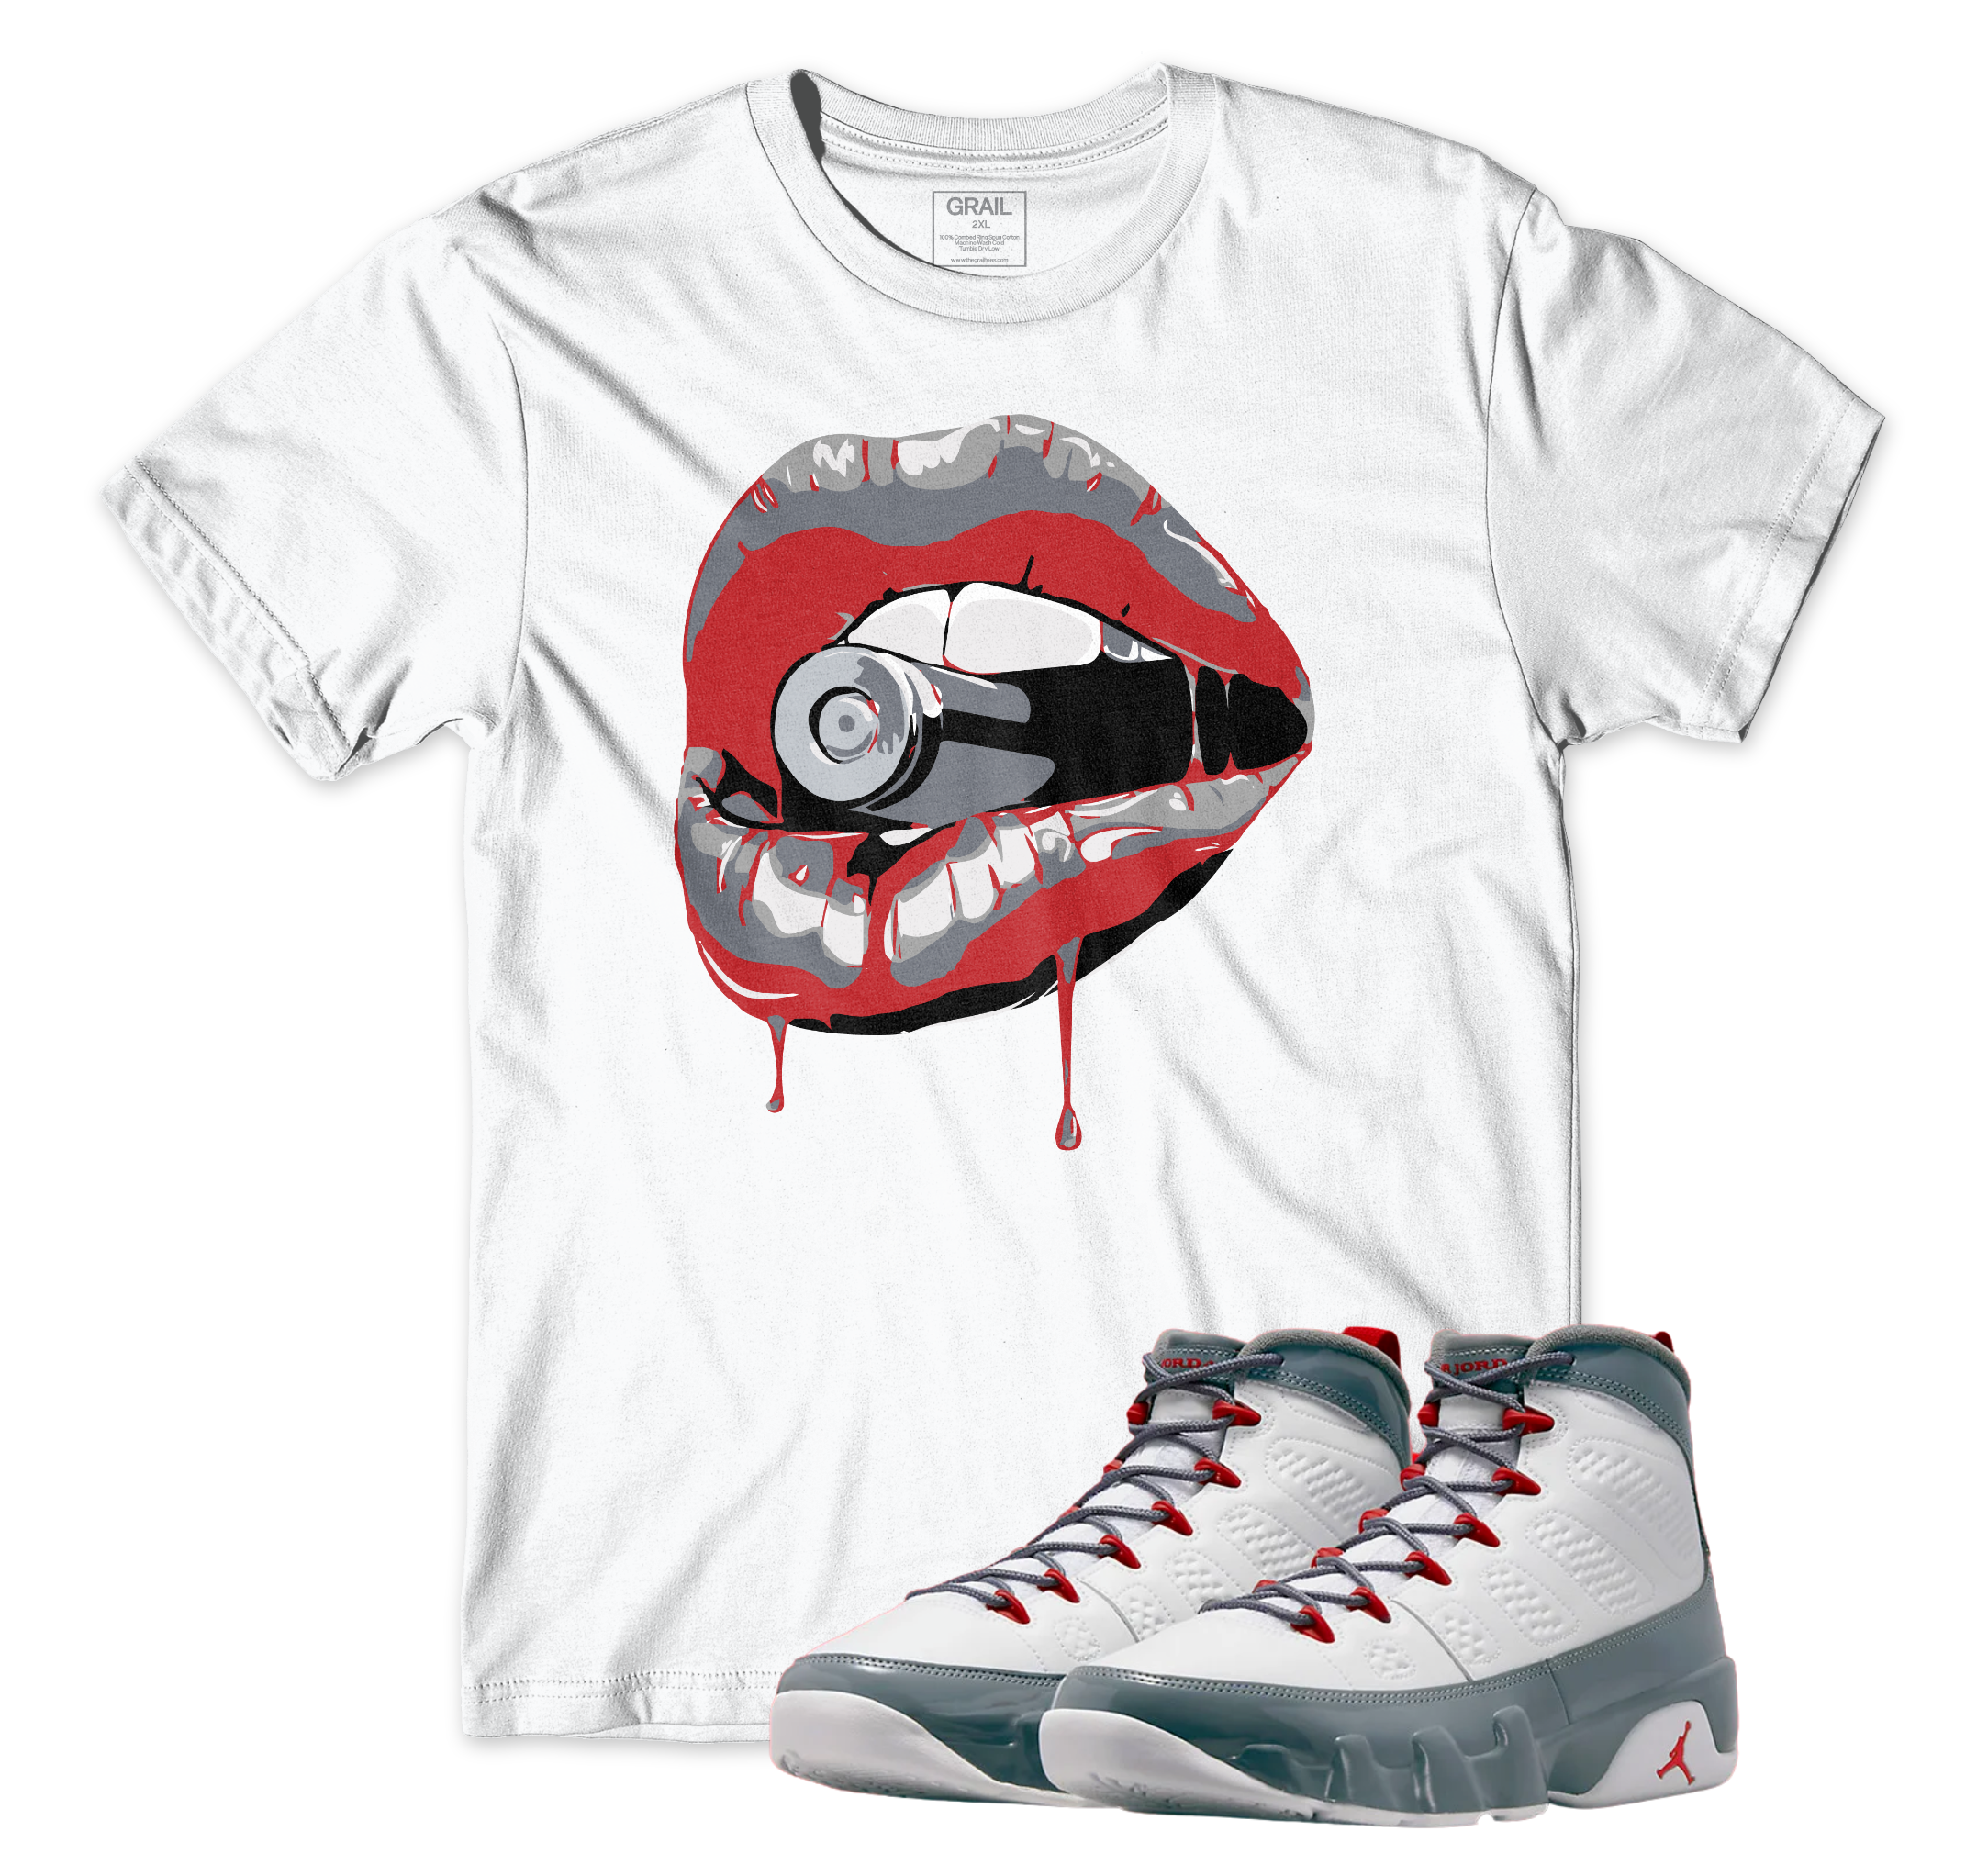 Air Jordan 9 Fire Red I Drip Lips T-Shirt | Air Jordan 9 Fire Red | Sneaker Match | Jordan Matching Outfits